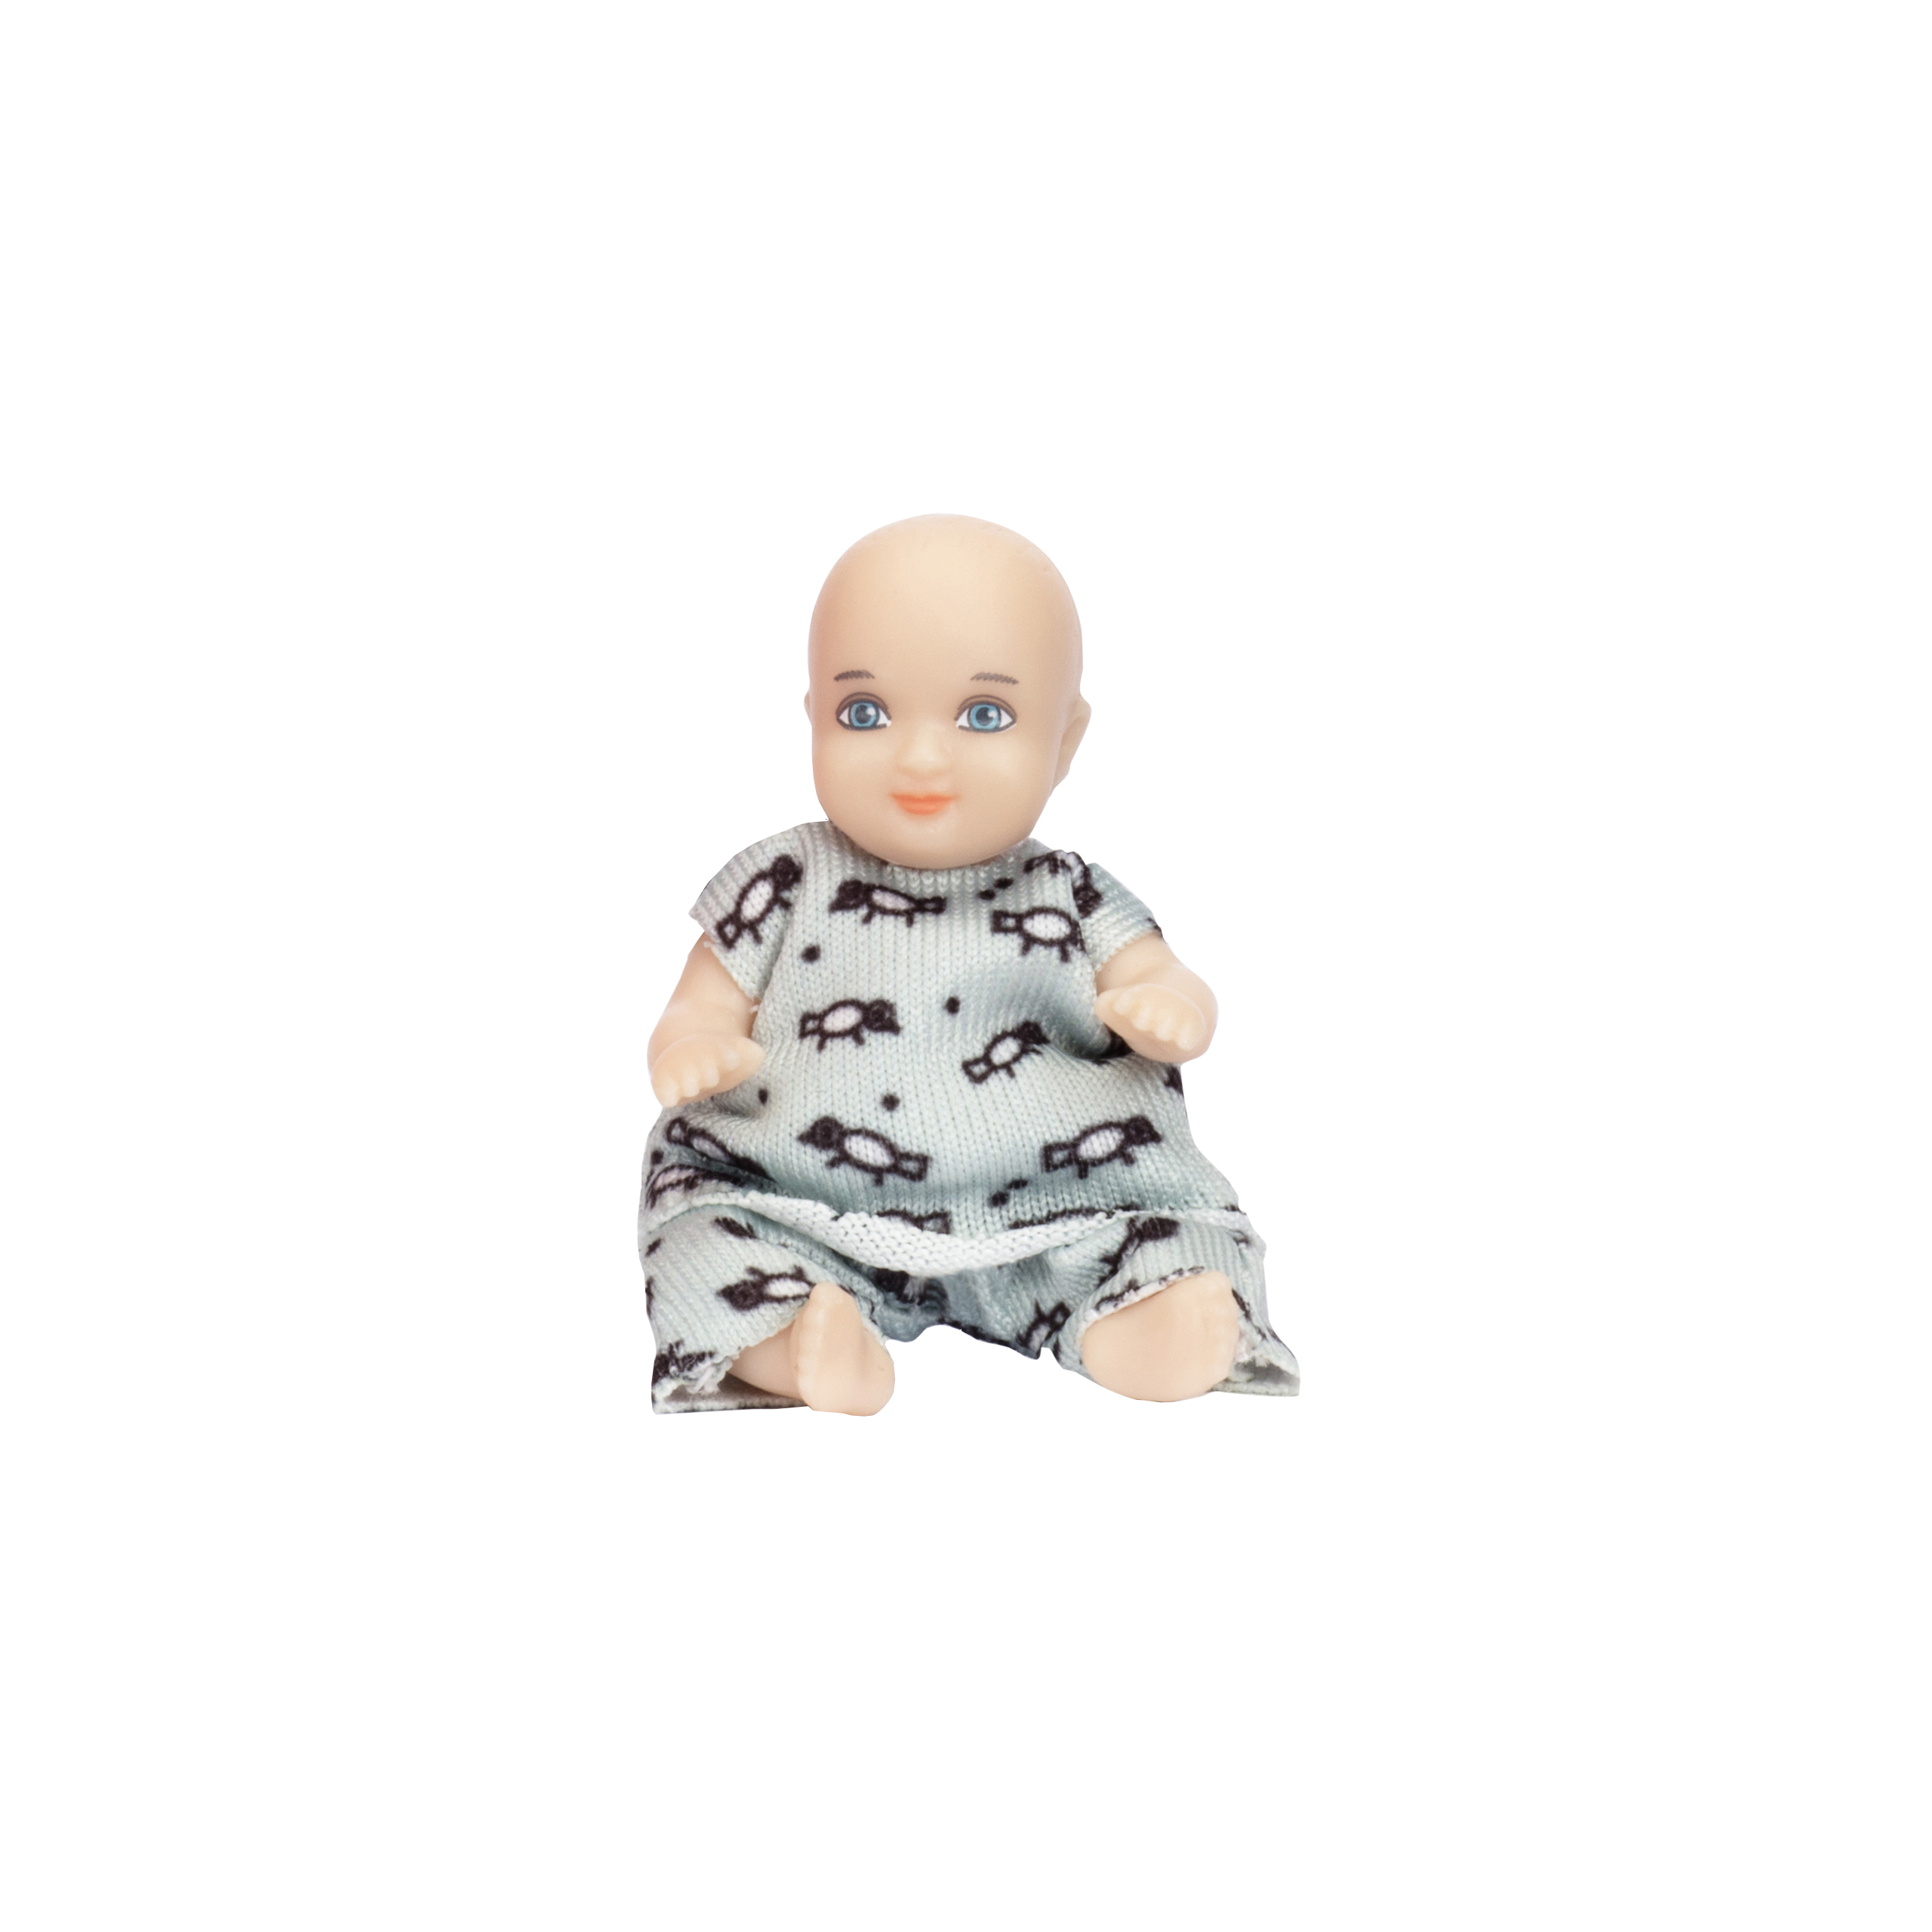 Dollhouse dolls & animals	 lundby dollhouse doll charlie baby